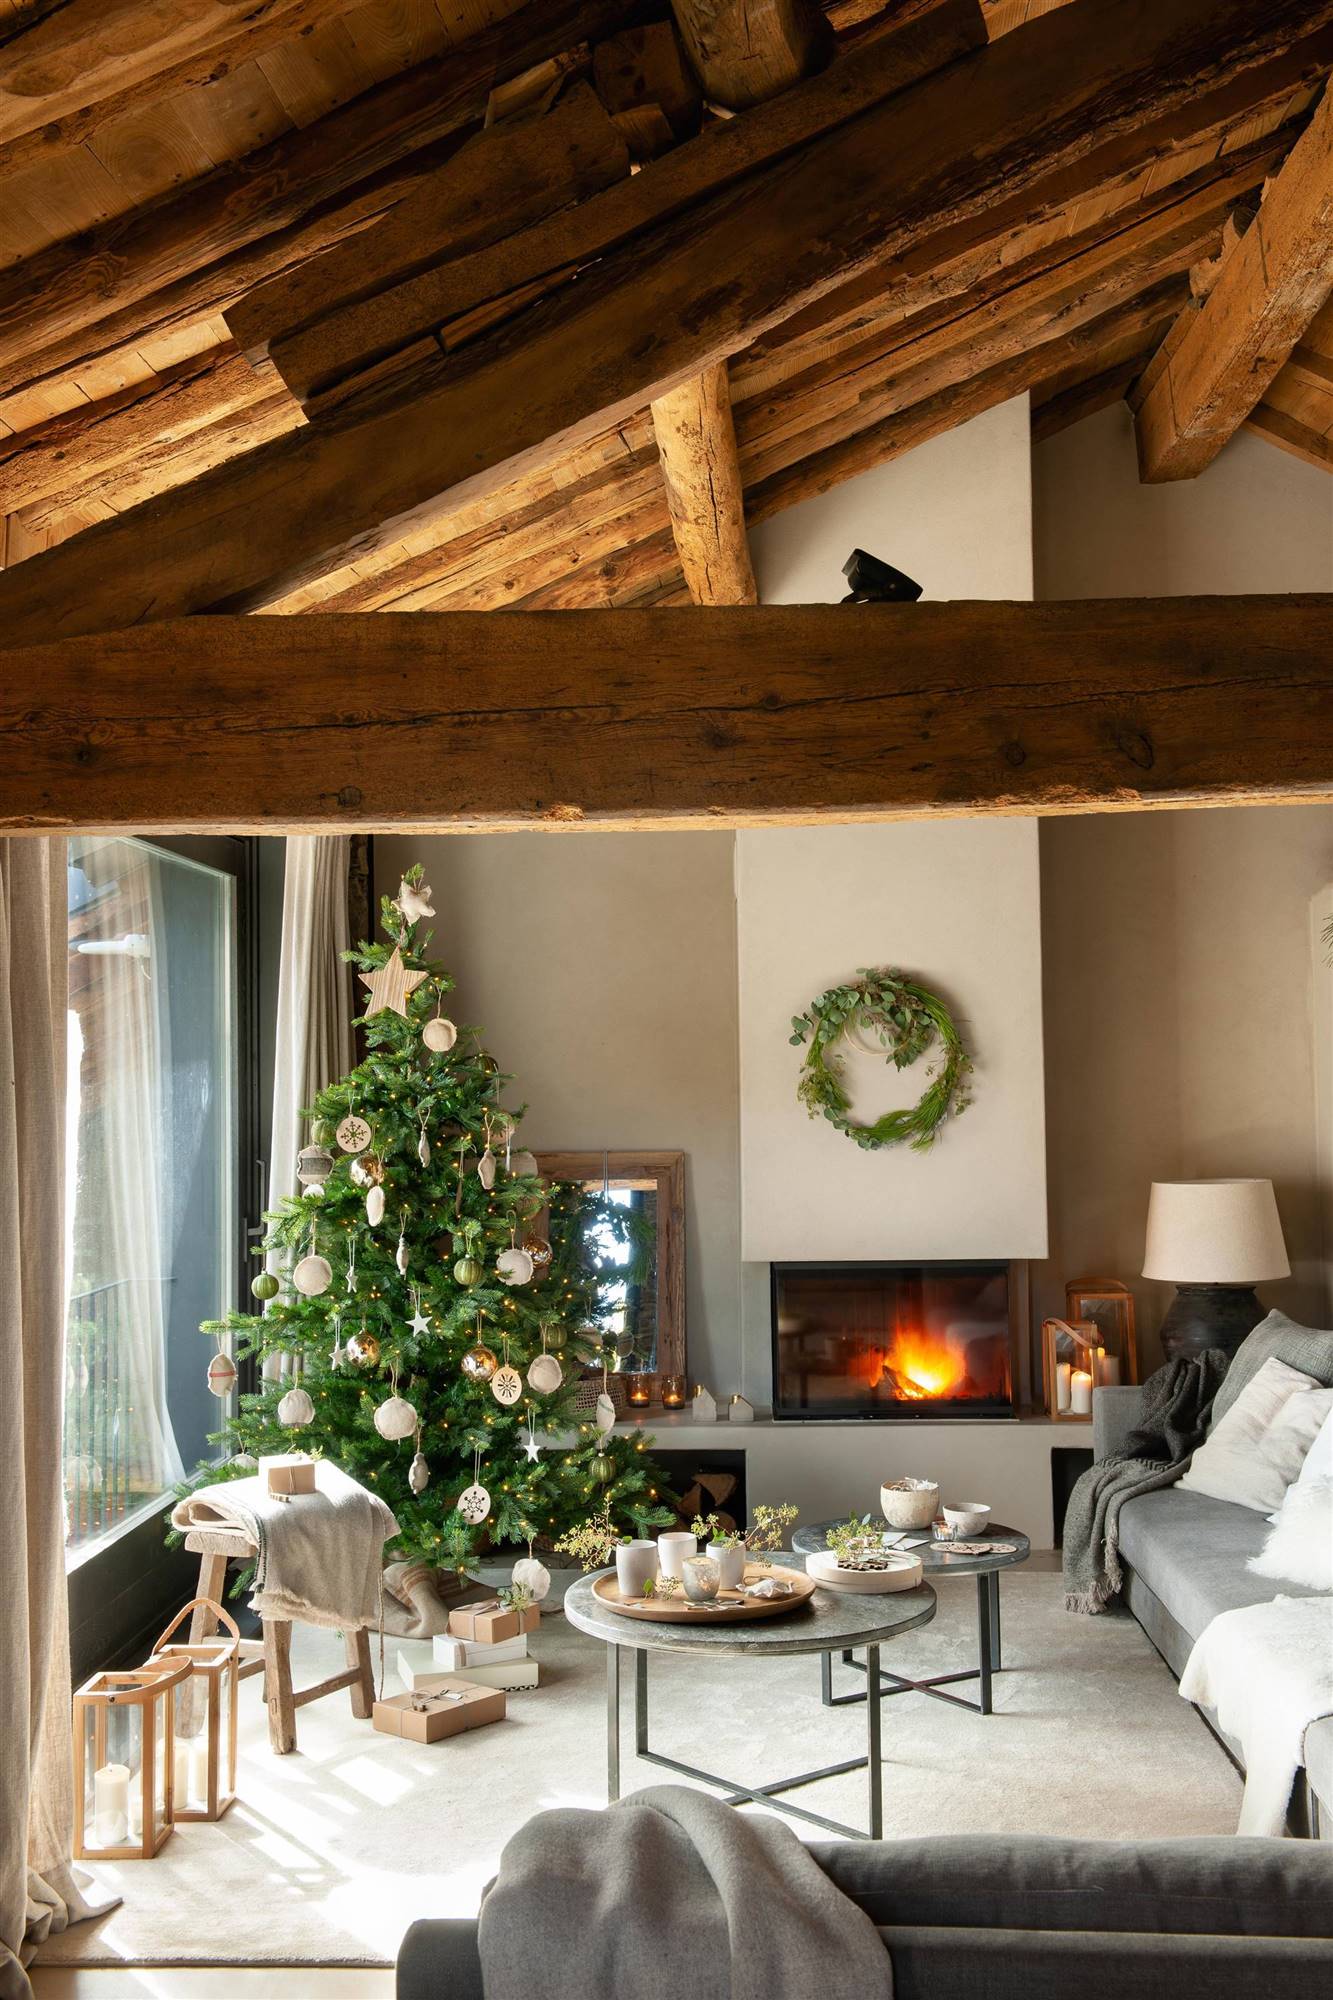  Salón con chimenea decorada Navidad 00515505